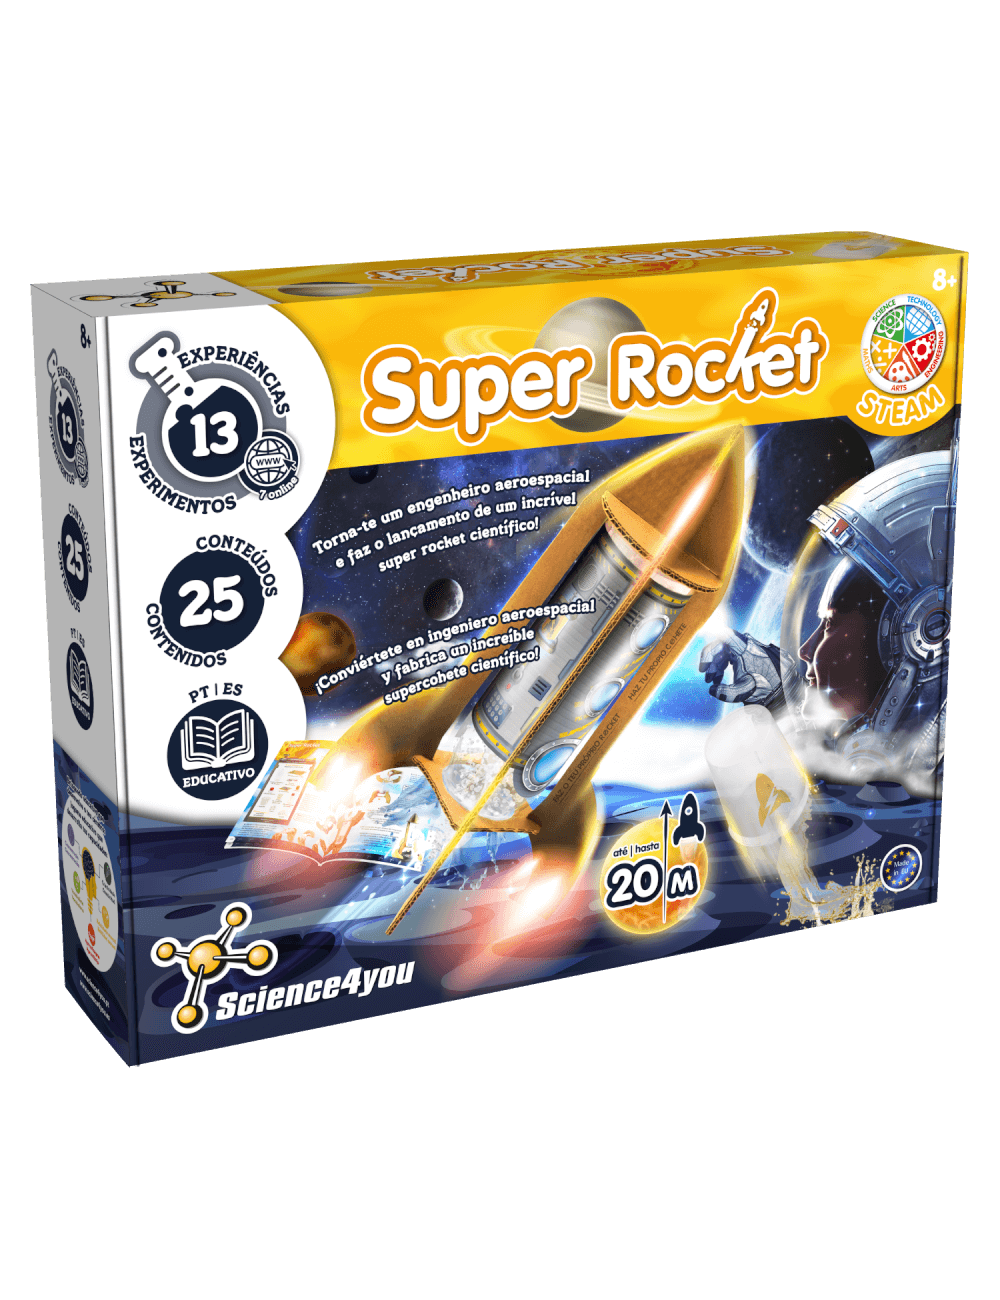 Super Rockets